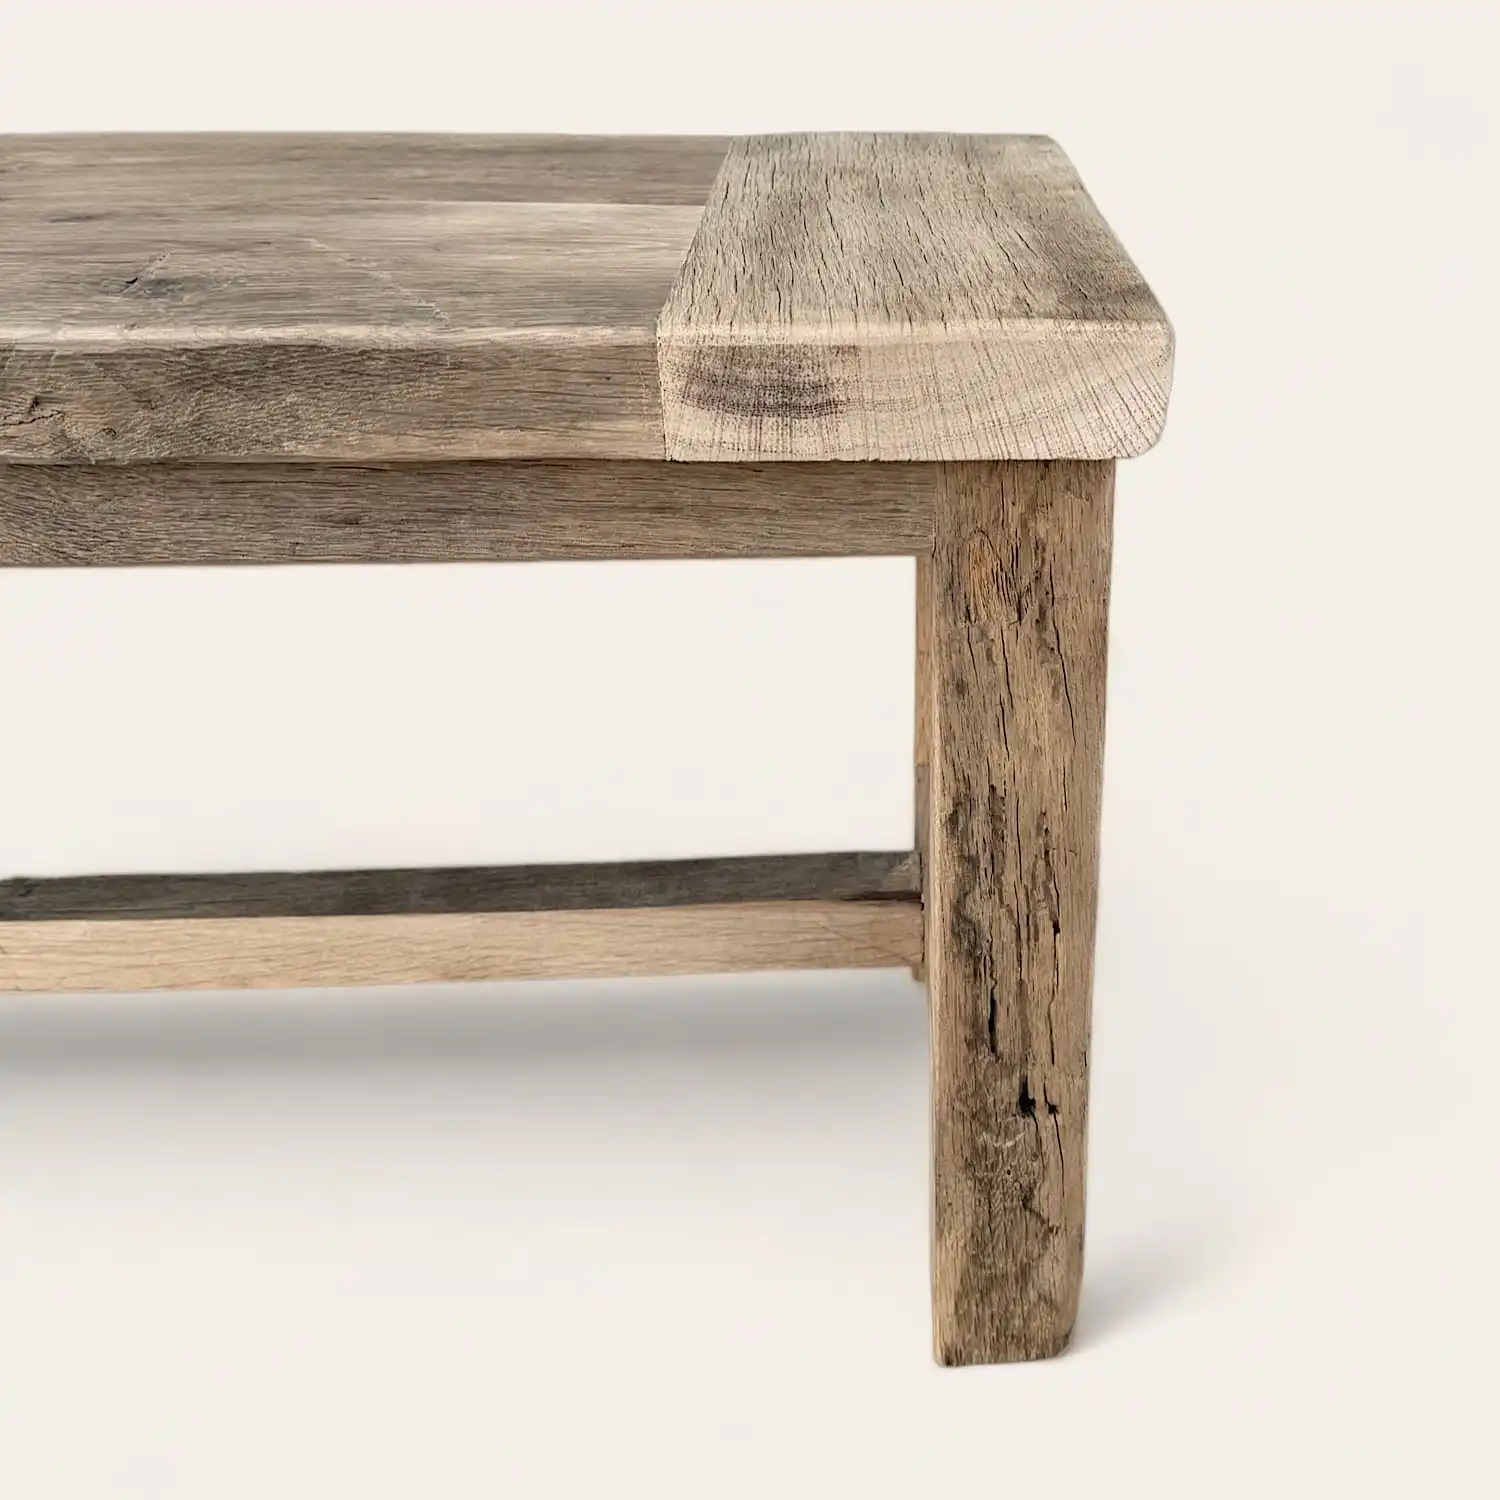  Une table basse rustique en bois avec un plateau en bois. 